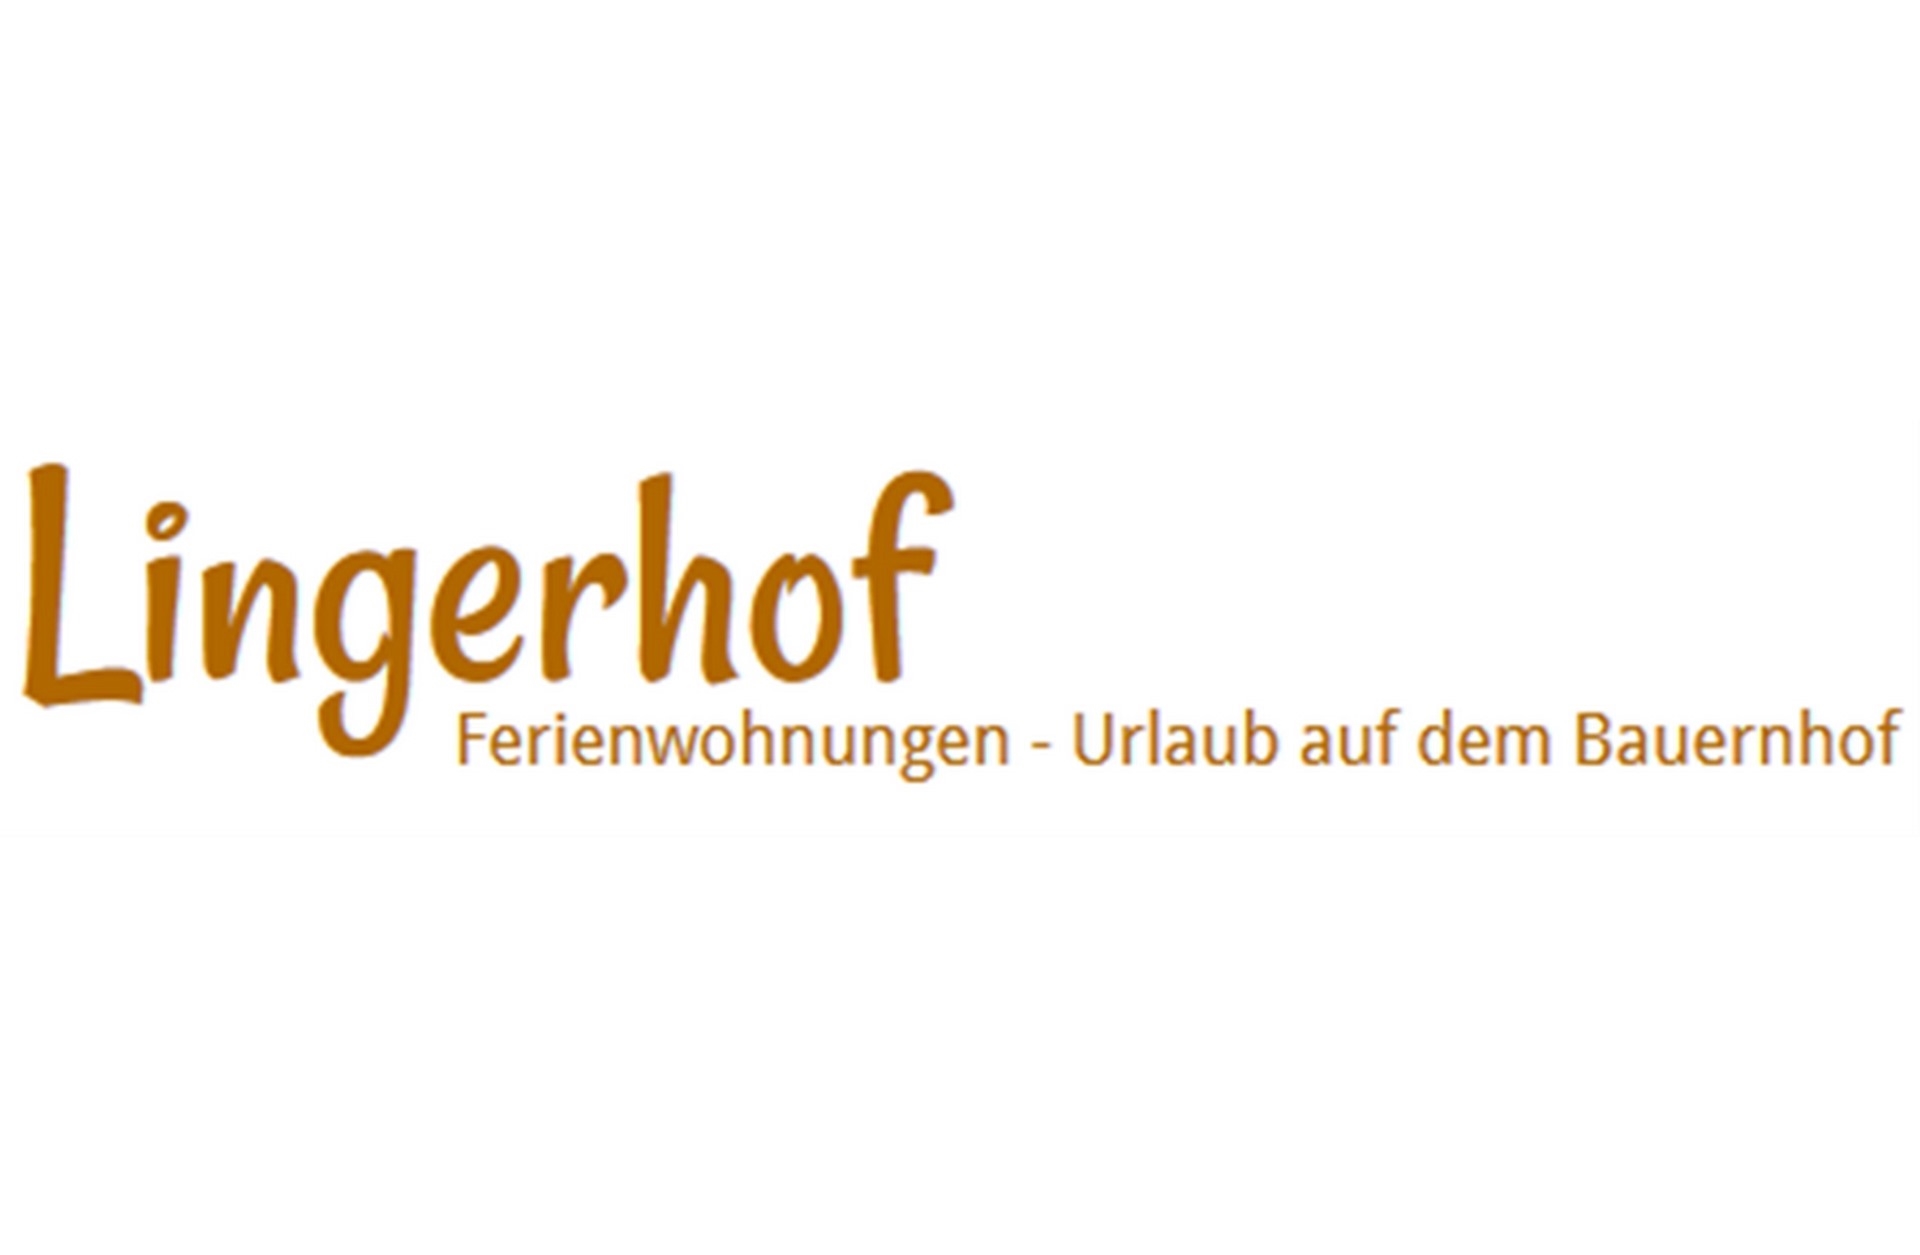 Lingerhof Ferienwohnungen - Urlaub auf dem Bauernhof Logo